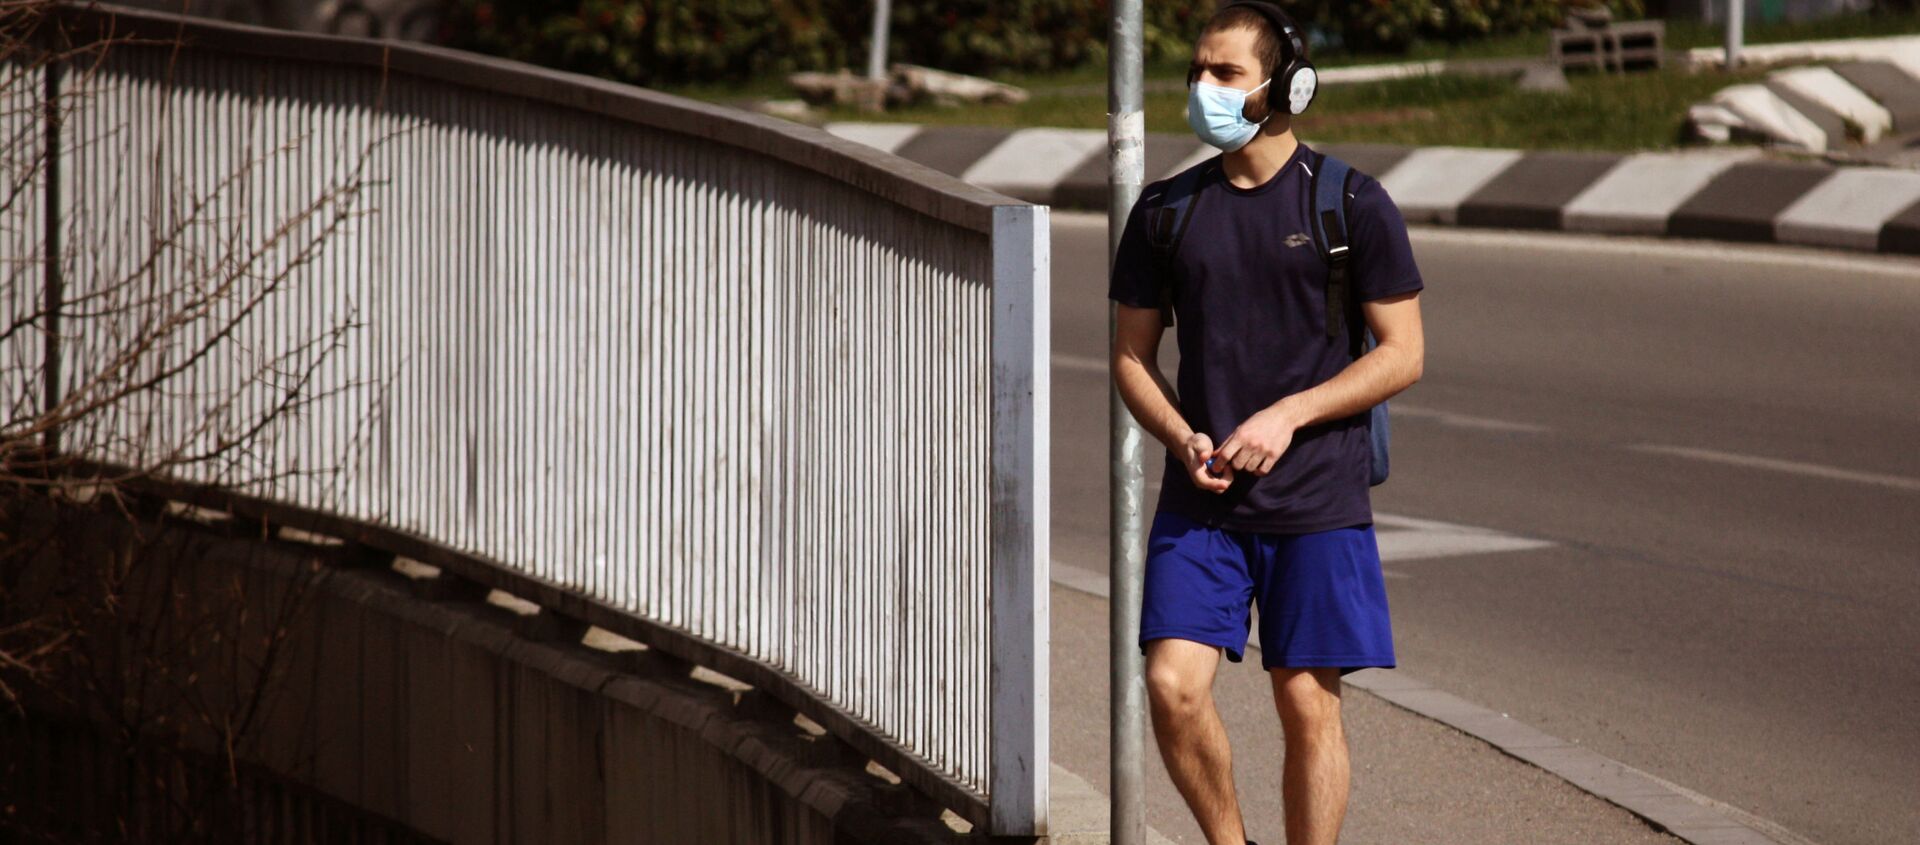 Весна Победы. Молодой человек тренируется на улице в маске во время эпидемии коронавируса - Sputnik Грузия, 1920, 18.05.2021